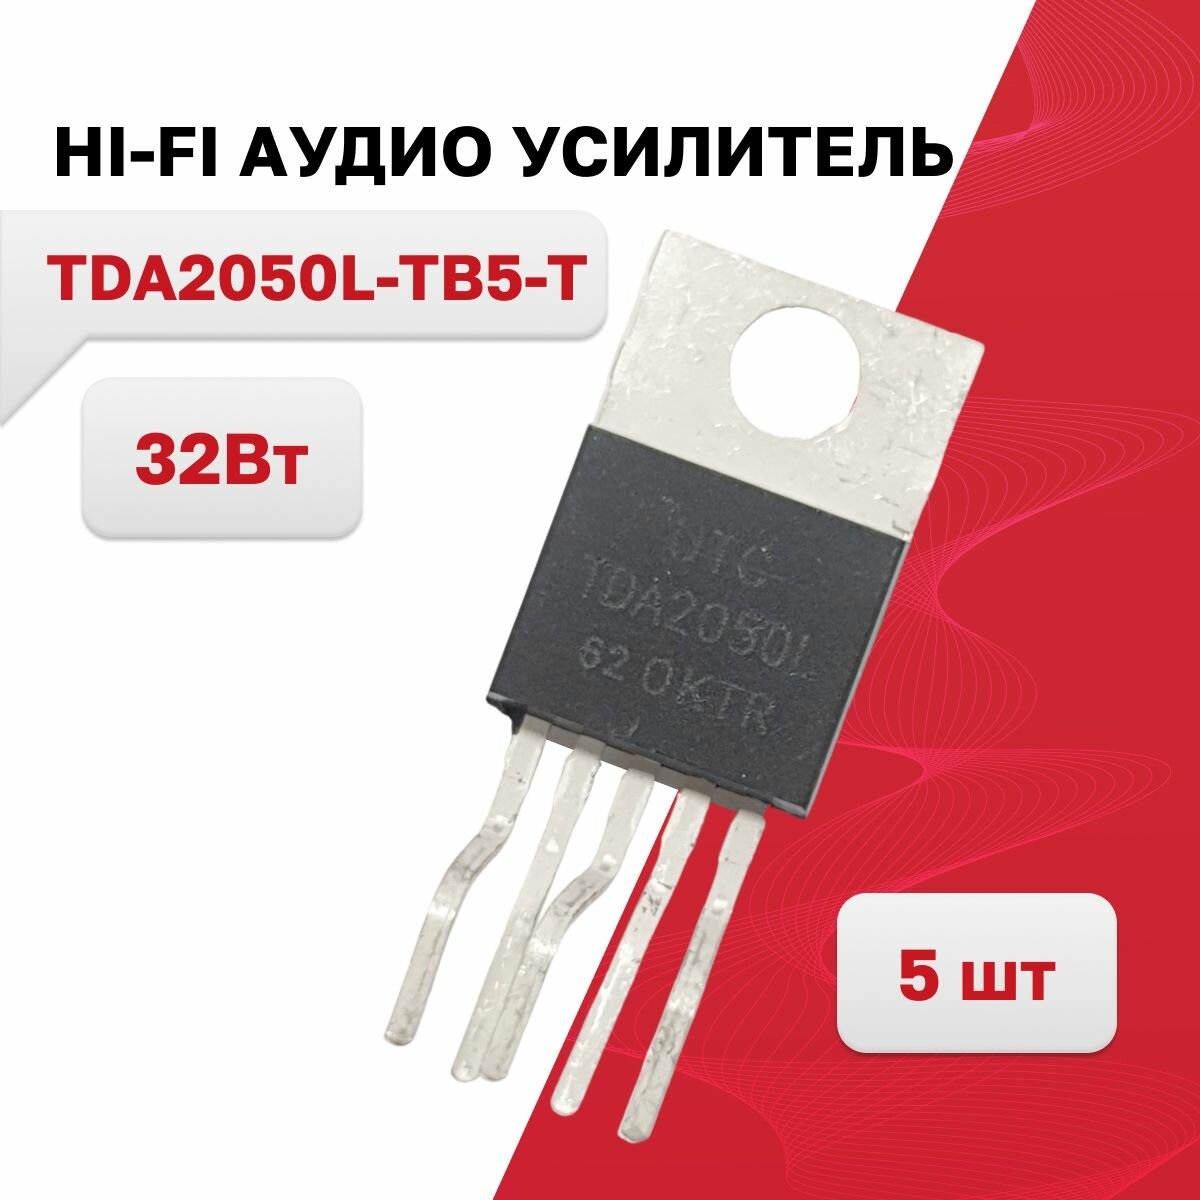 TDA2050L-TB5-T HI-FI аудио усилитель 32Вт TO-220-5T 5 шт.